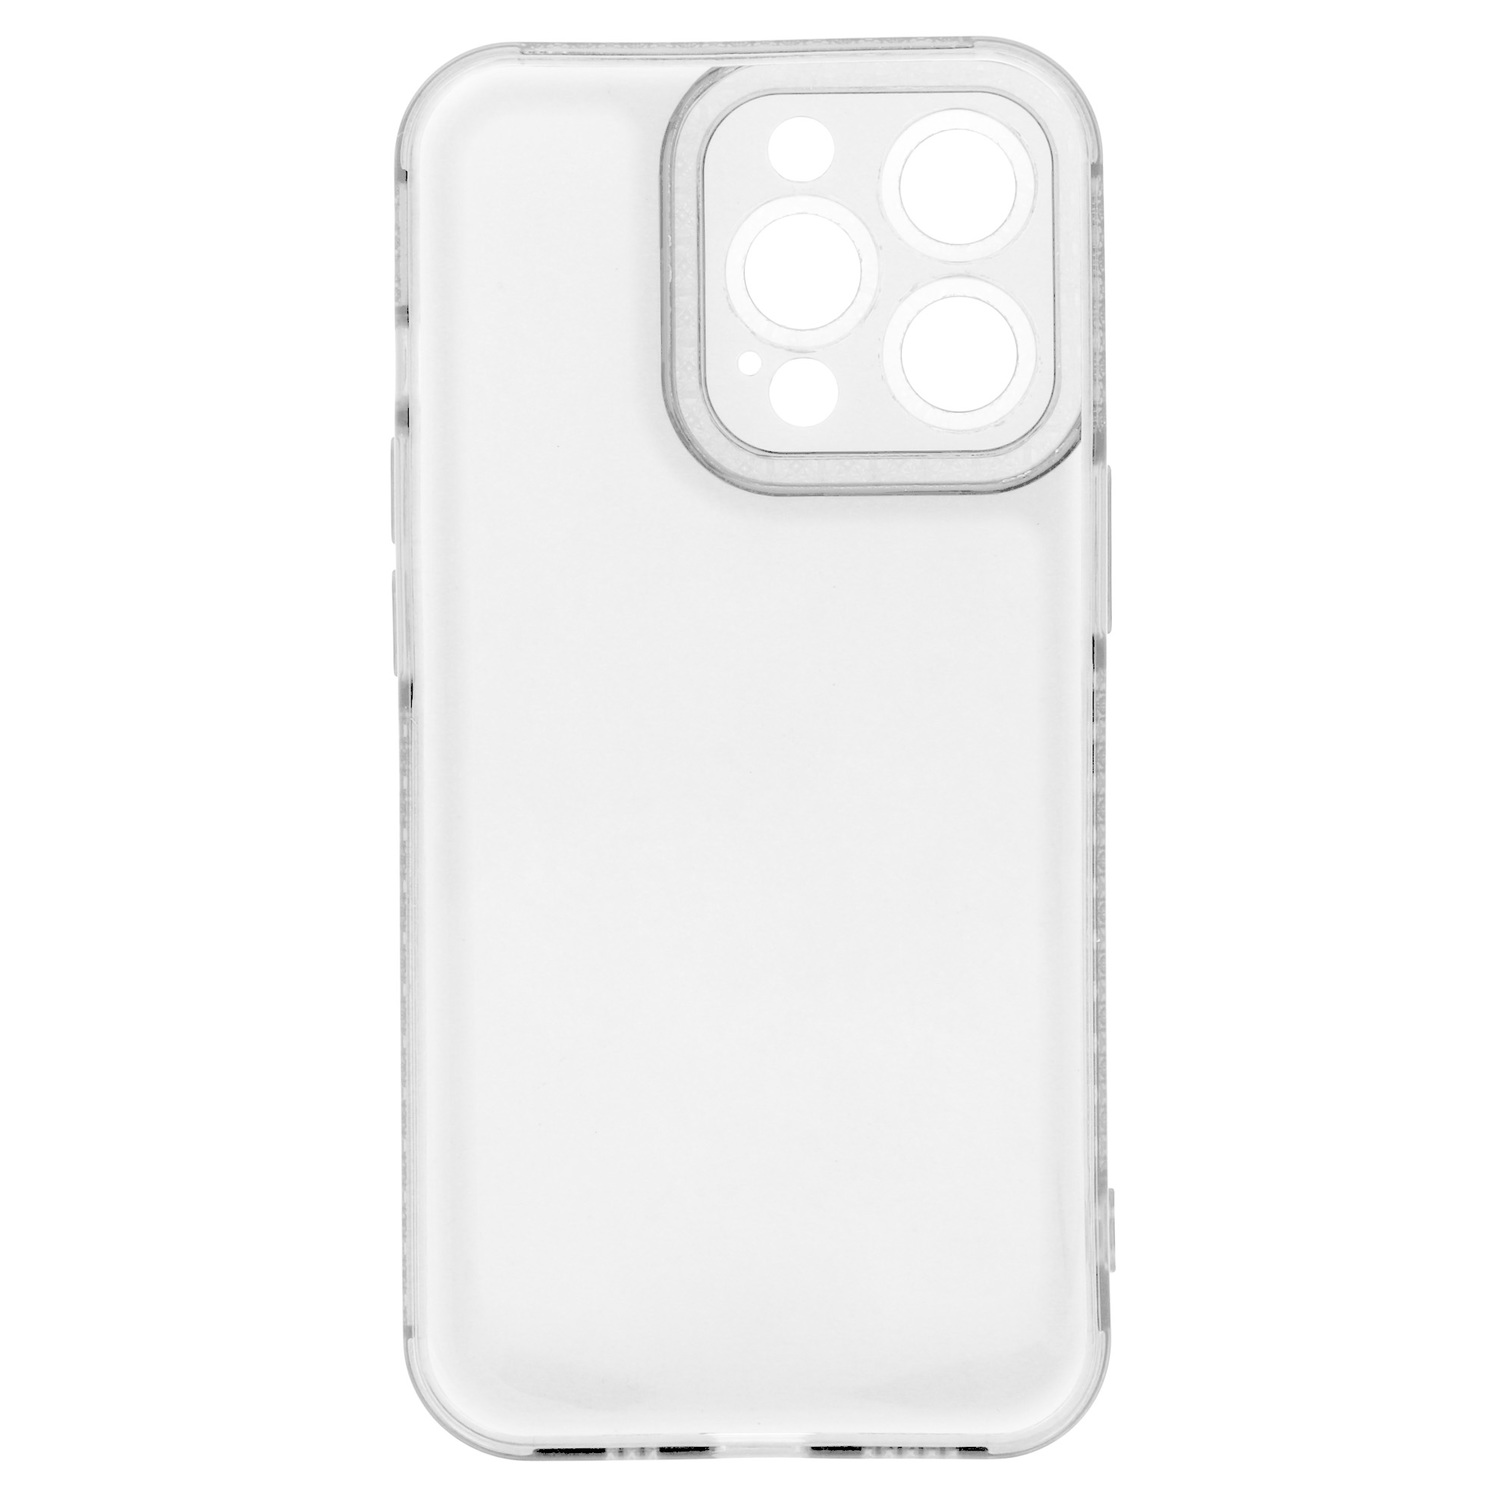 Pokrowiec etui silikonowe Crystal Diamond Case przezroczyste APPLE iPhone 12 Pro Max / 5